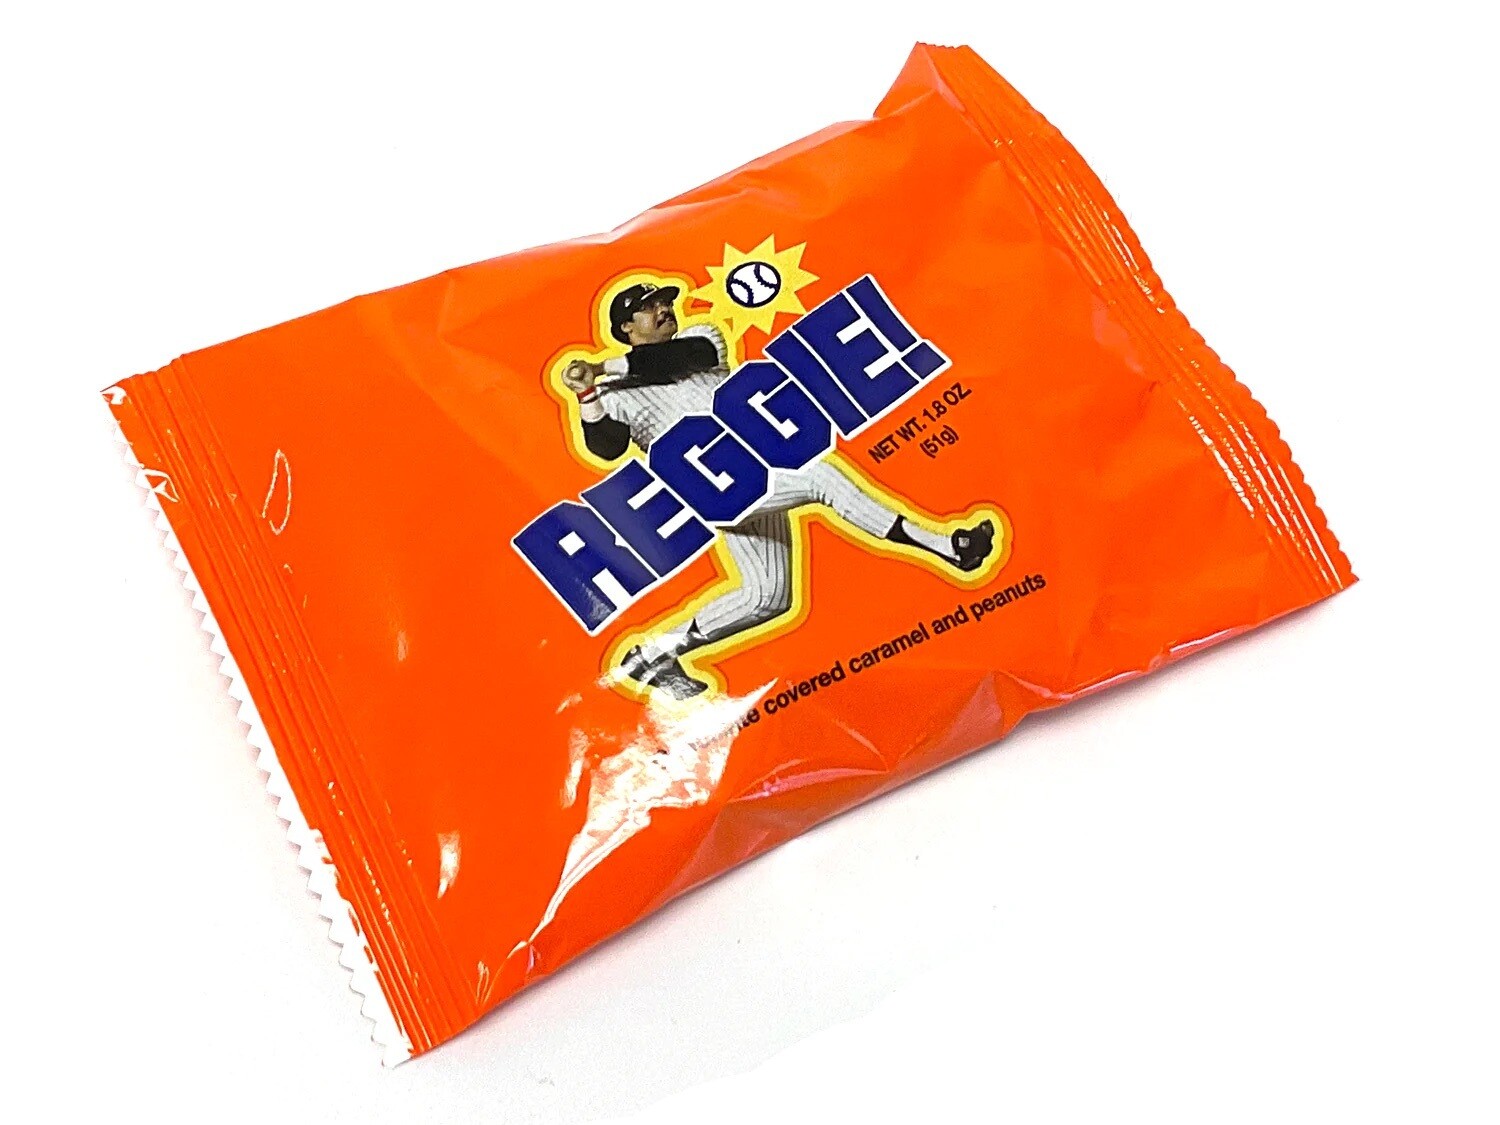 The Original Reggie! Chocolate Bar